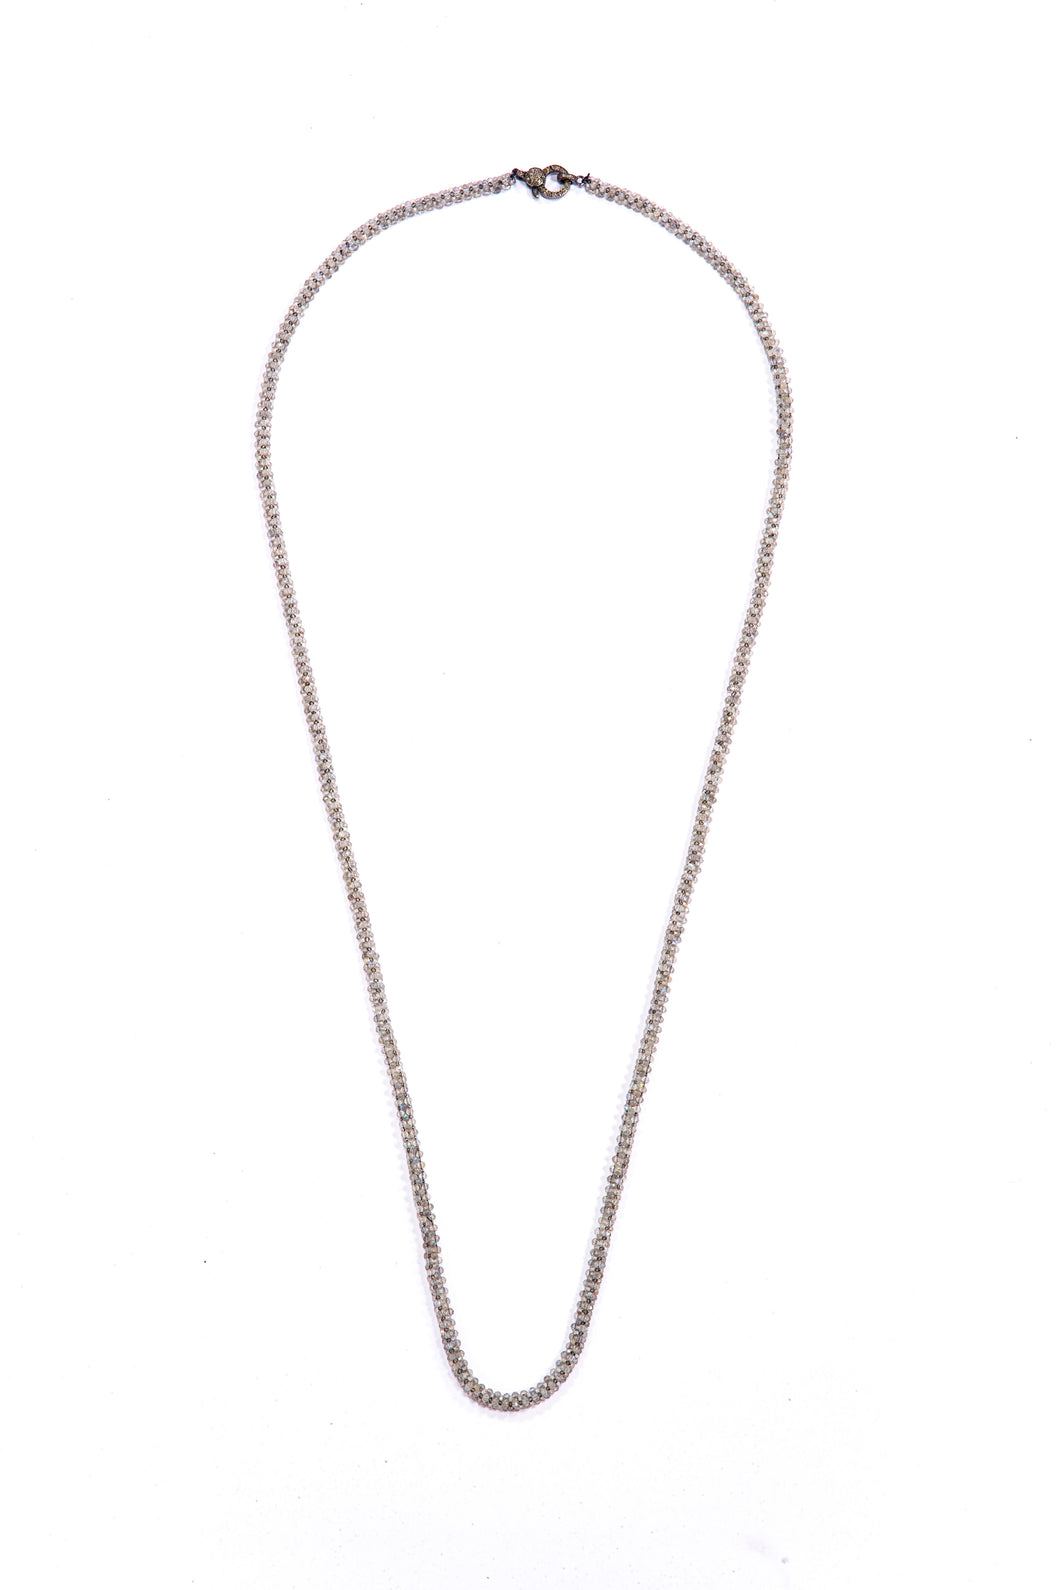 Labradorite Woven Chain w/ Diamond Lobster Claw Clasp (32